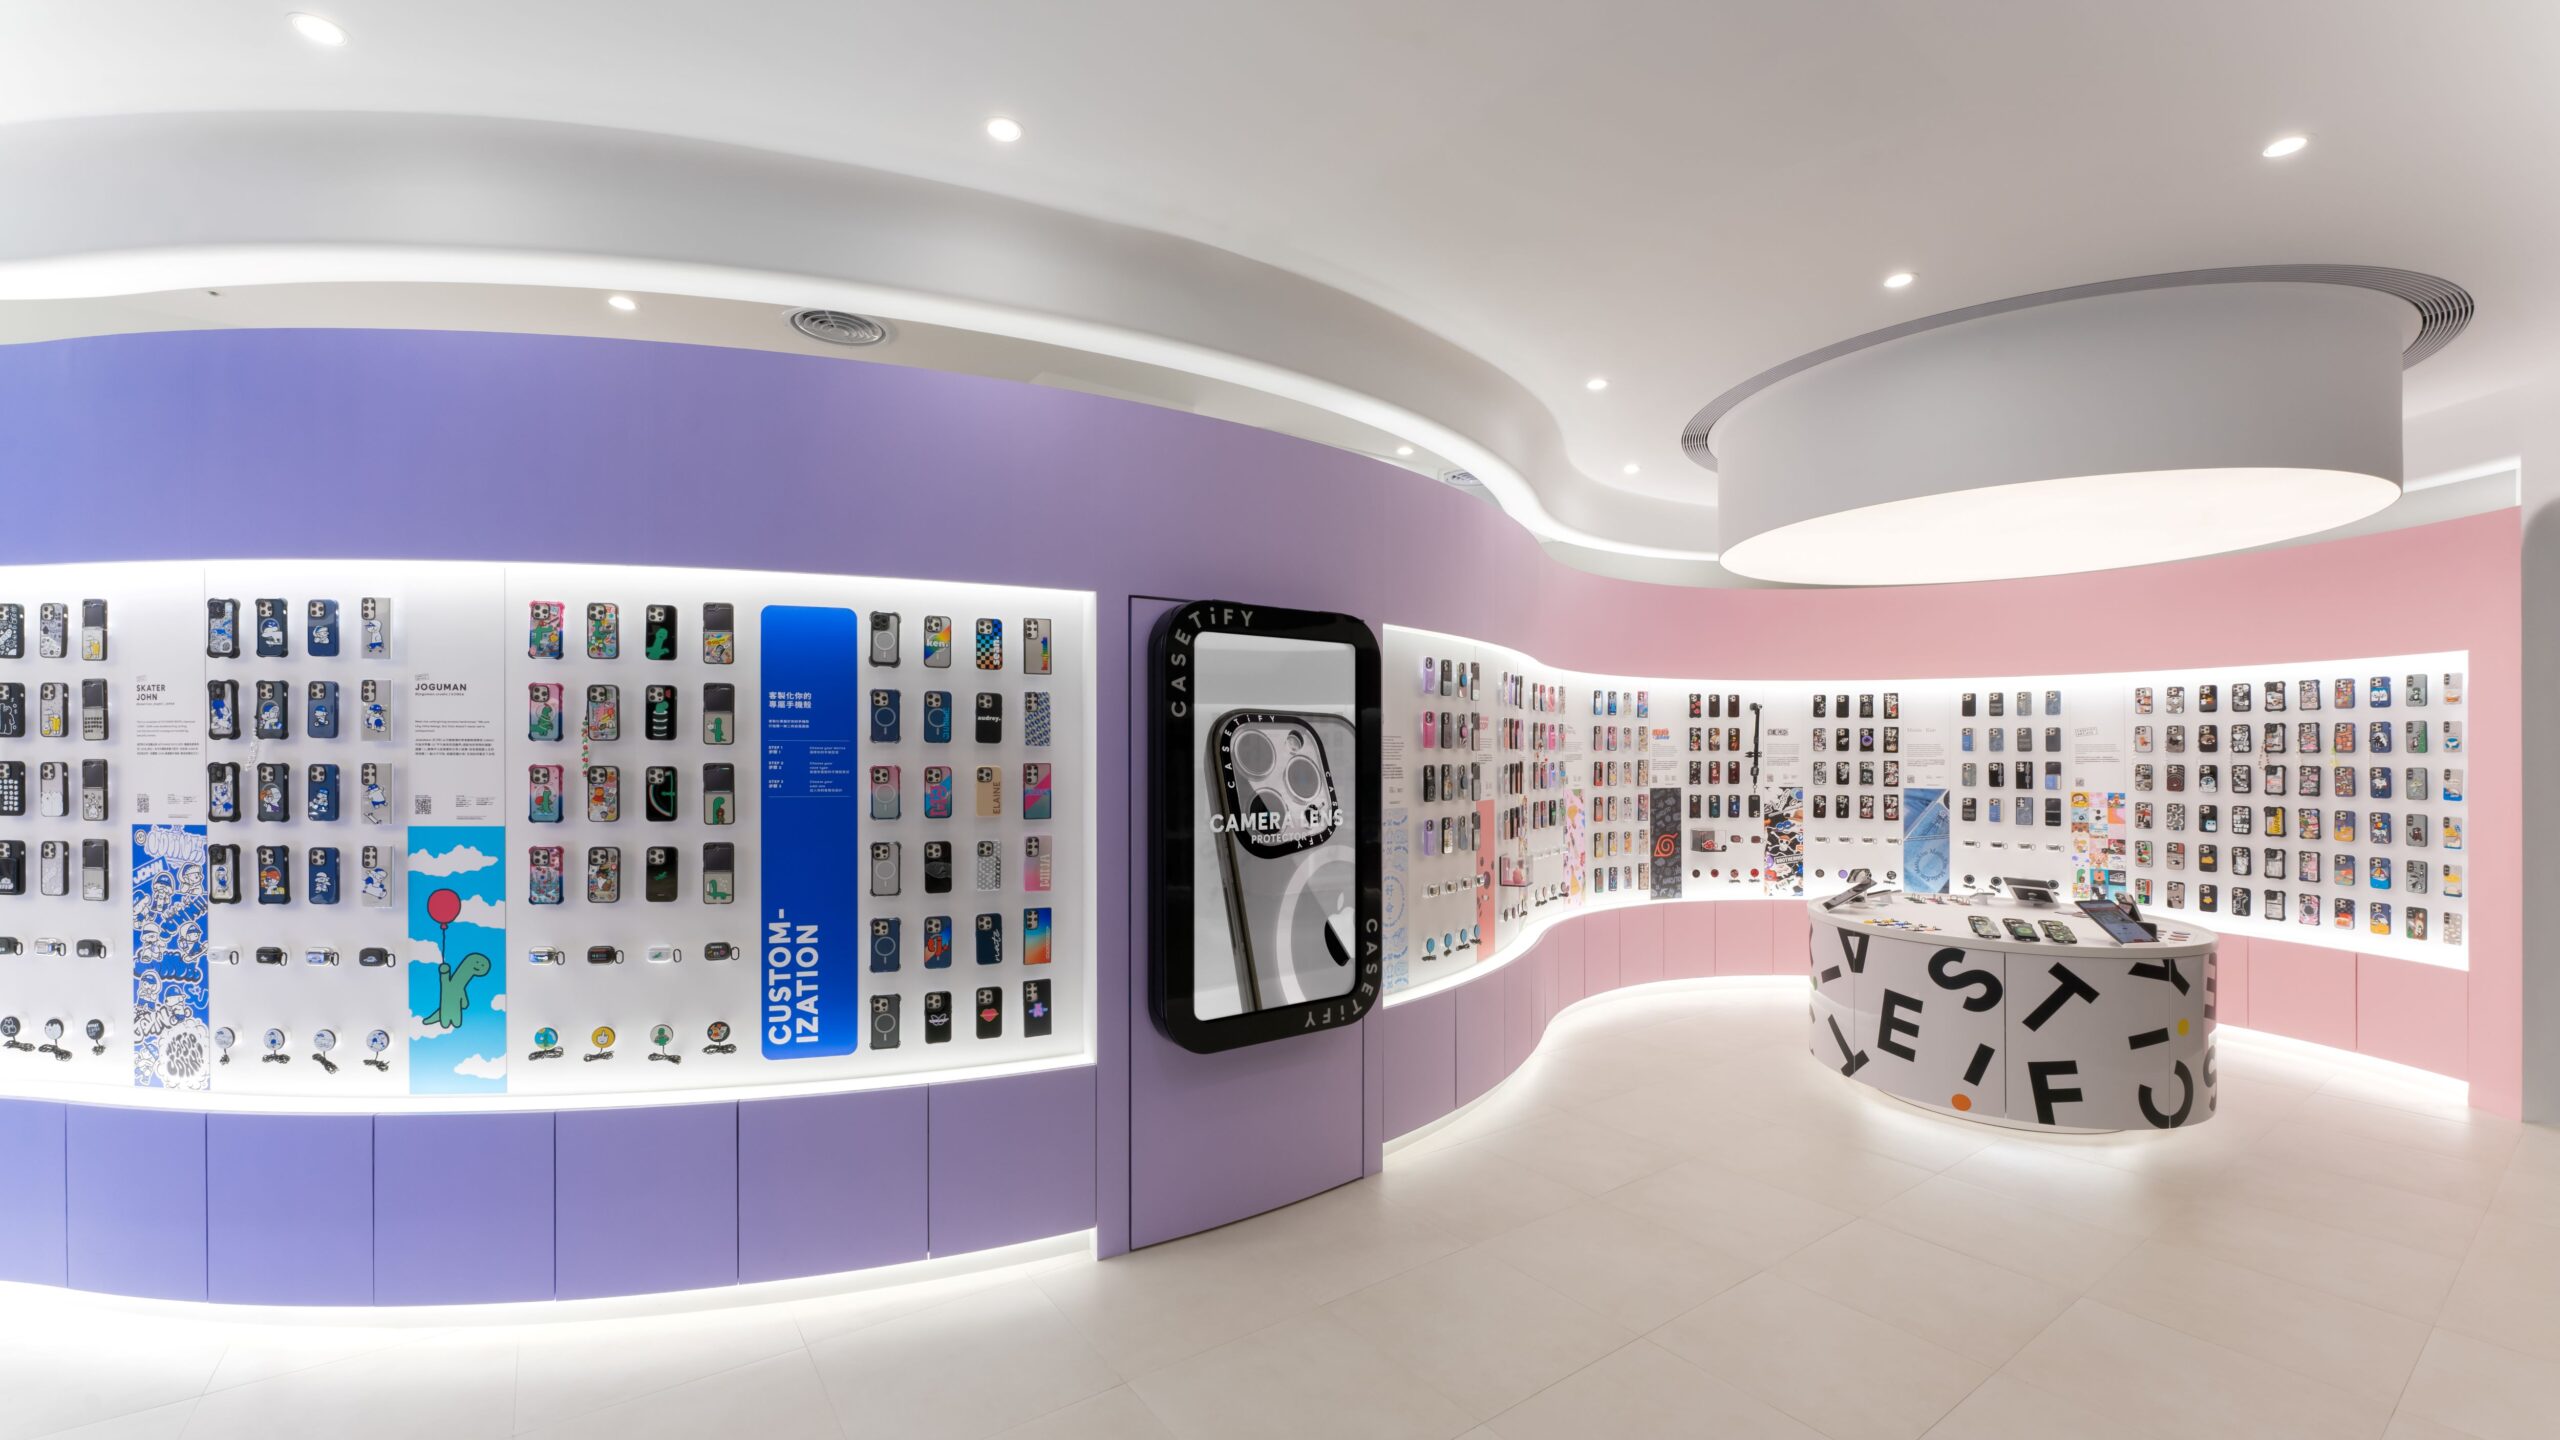  CASETiFY STUDiO 新光三越台北南西店三館採用品牌視覺粉紅色與藍色漸層牆面